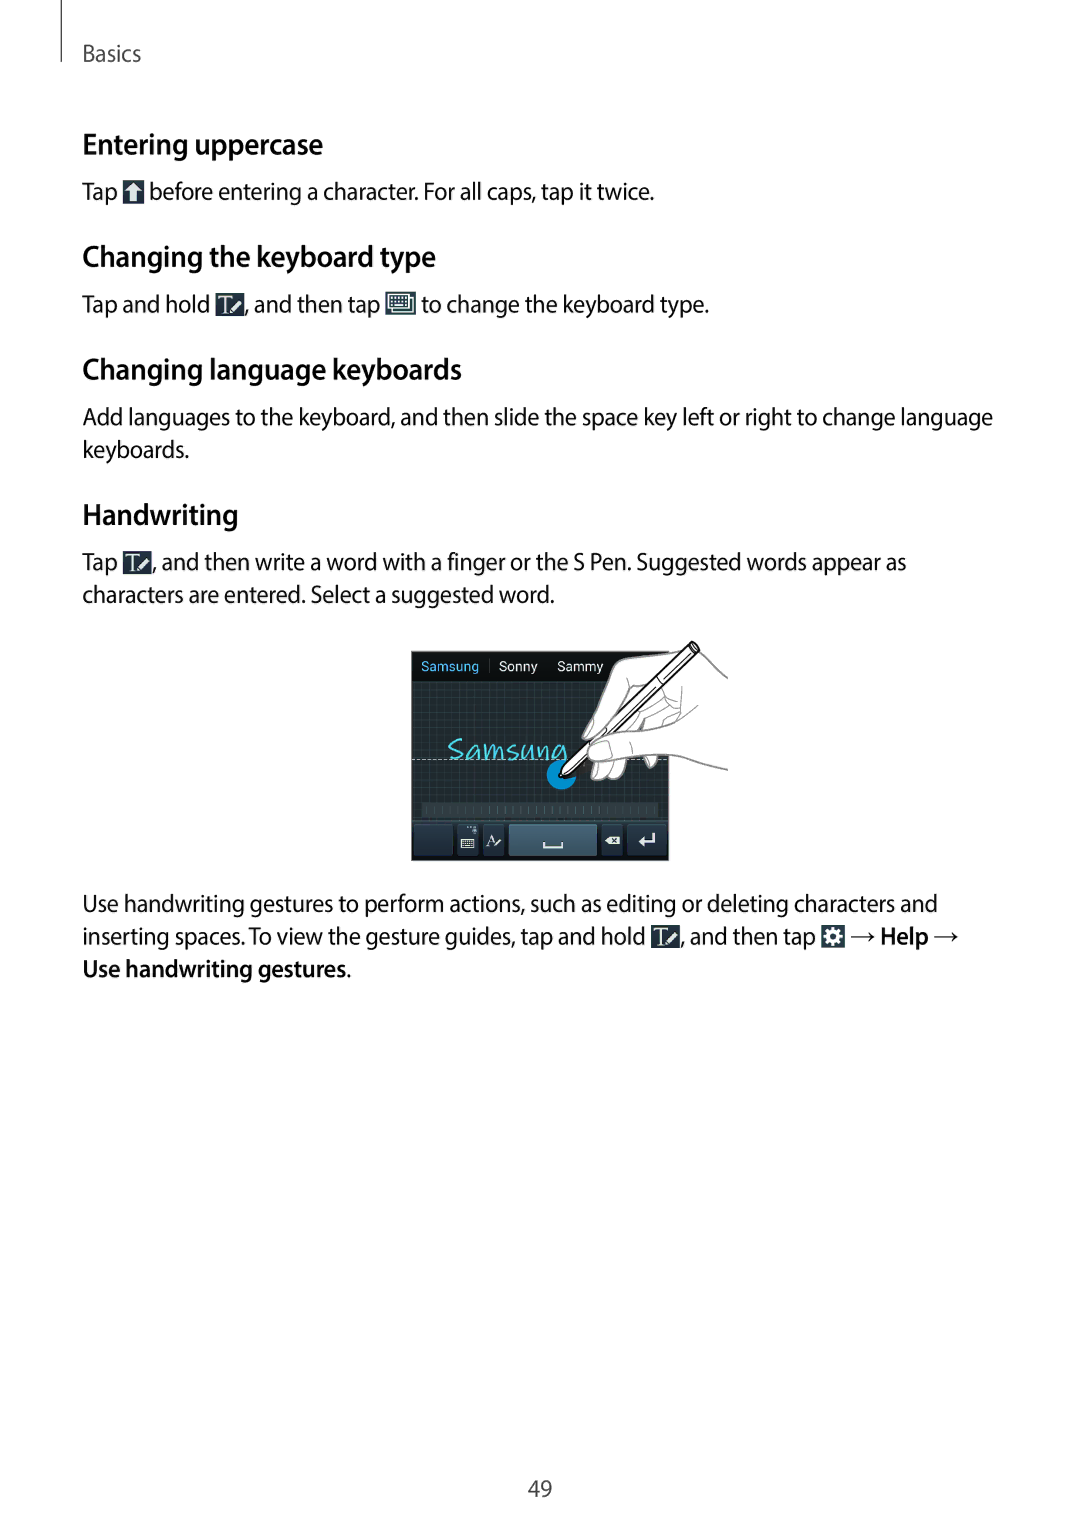 Samsung SM-N7500ZKAAFR manual Entering uppercase, Changing the keyboard type, Changing language keyboards, Handwriting 